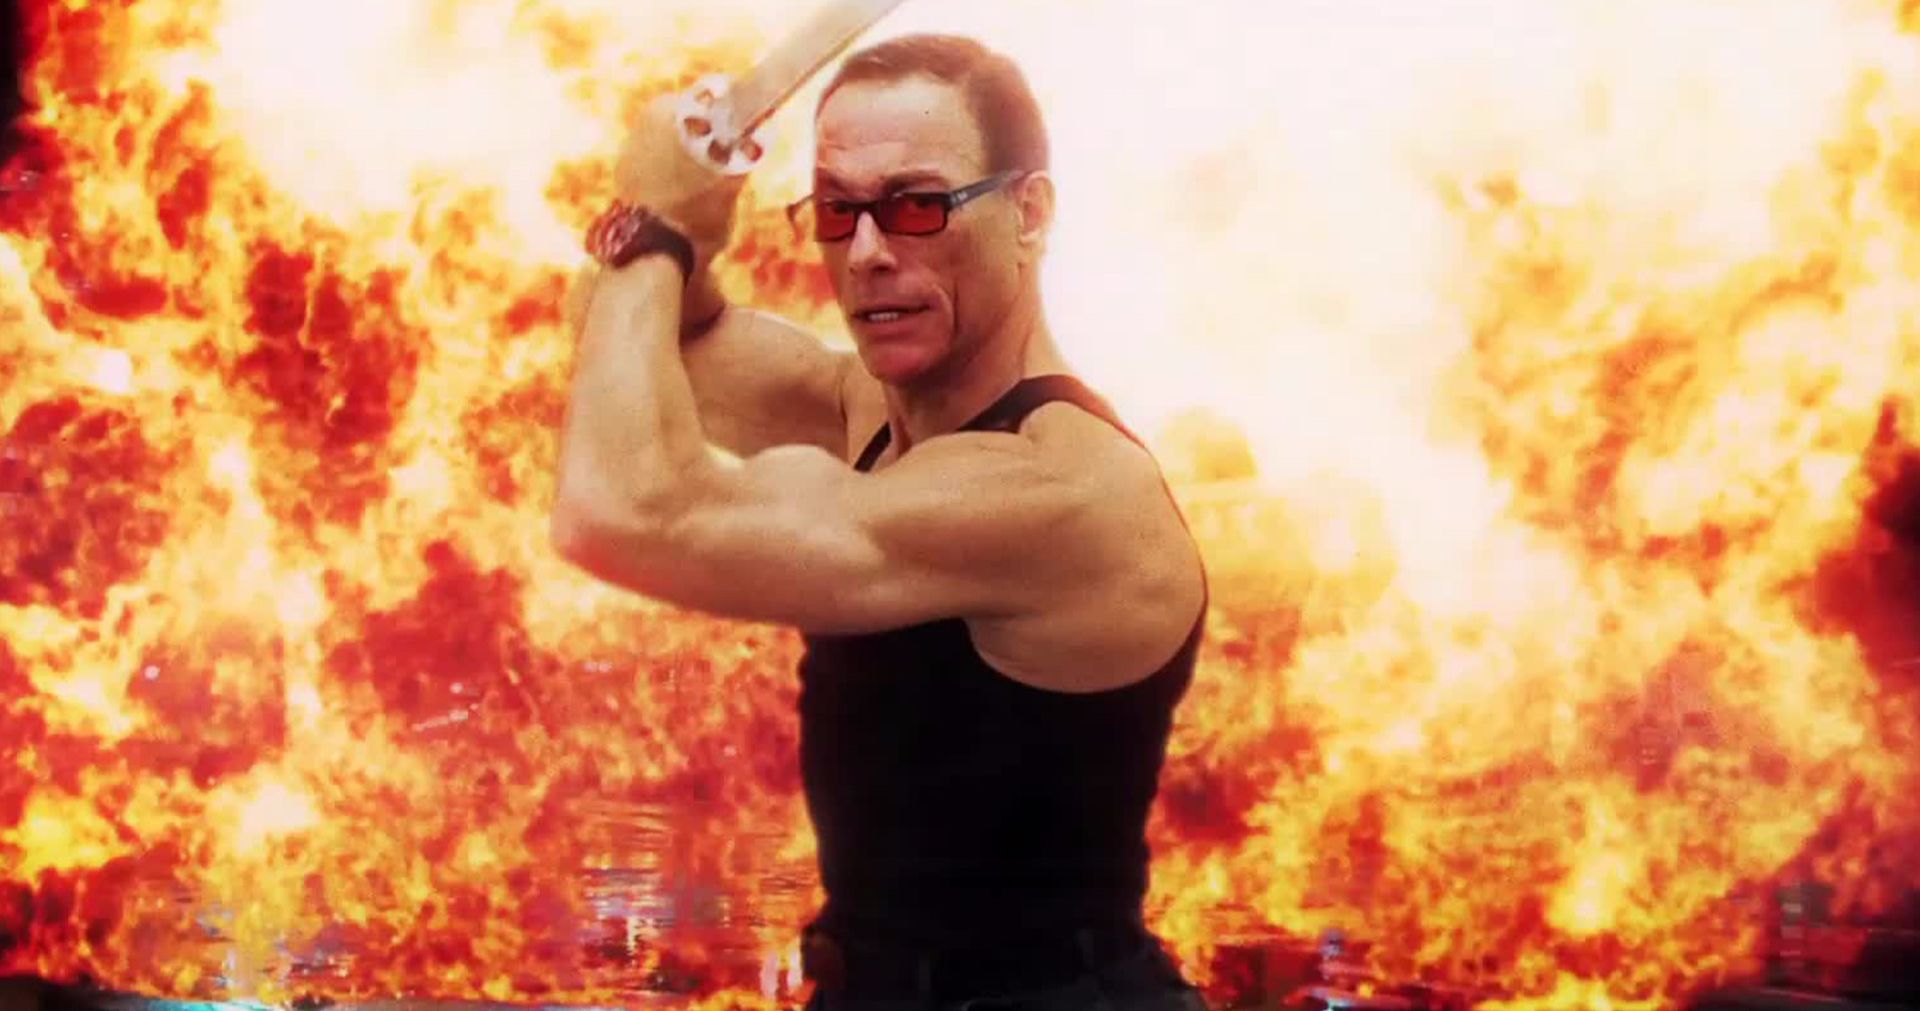 Jean-Claude Van Damme Is The Last Mercenary in New Netflix Action Comedy